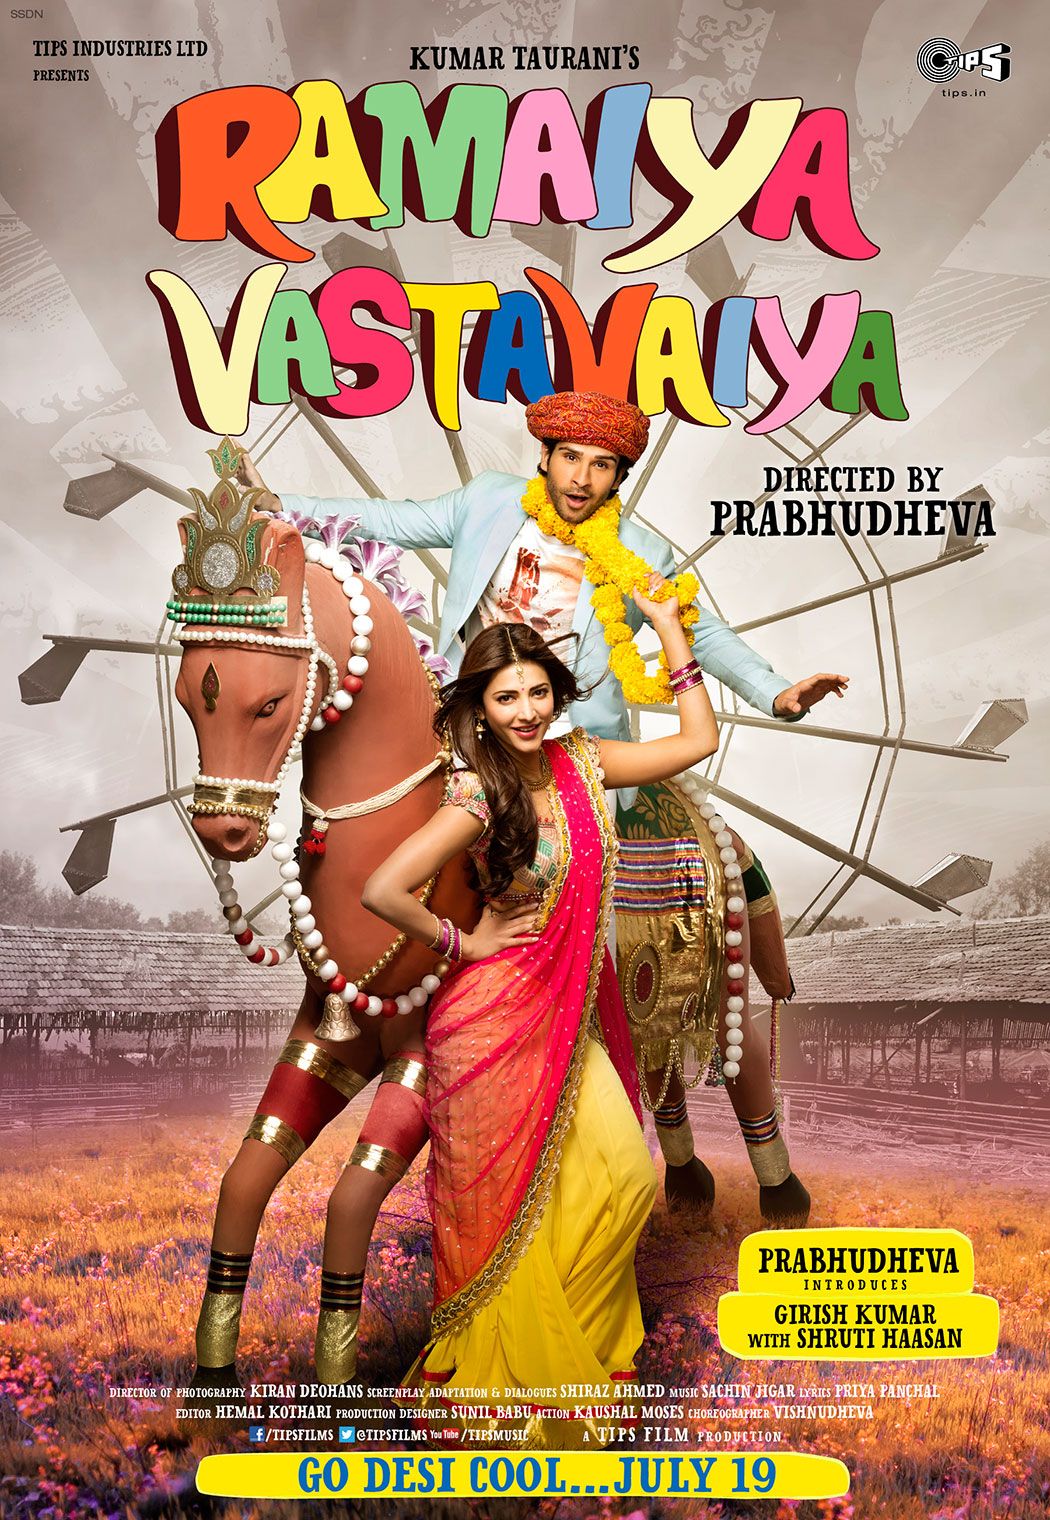 Ramaiya Vastavaiya stars Girish Kumar & Shruti Haasan